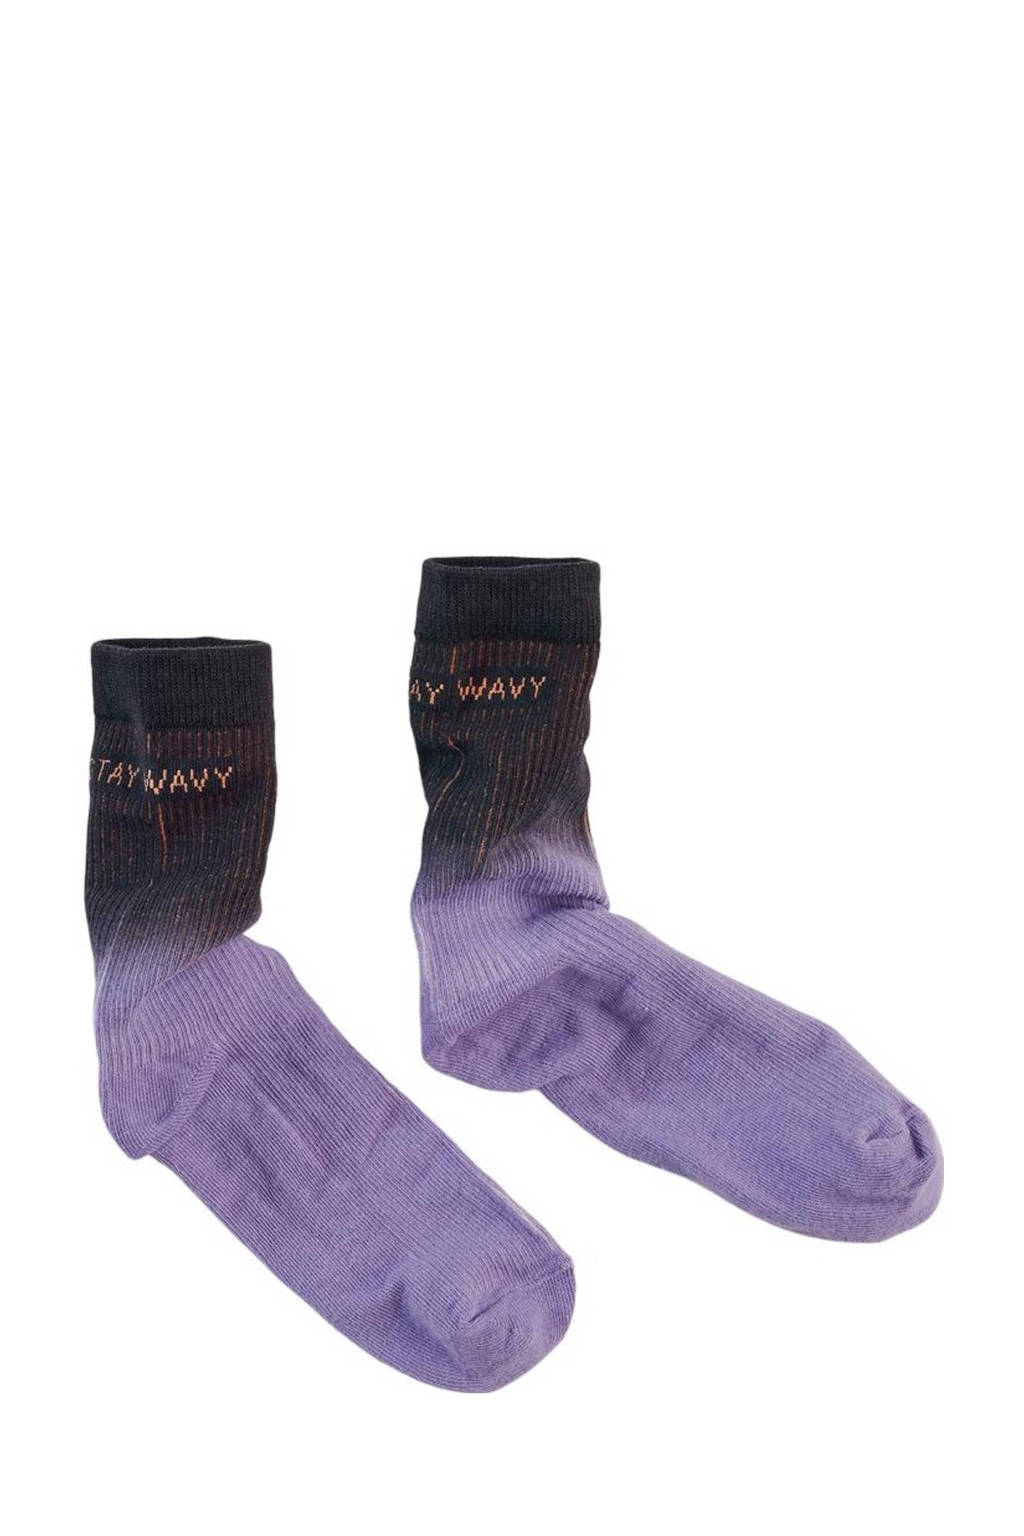 Z8 sokken paars/zwart, Zwart/paars